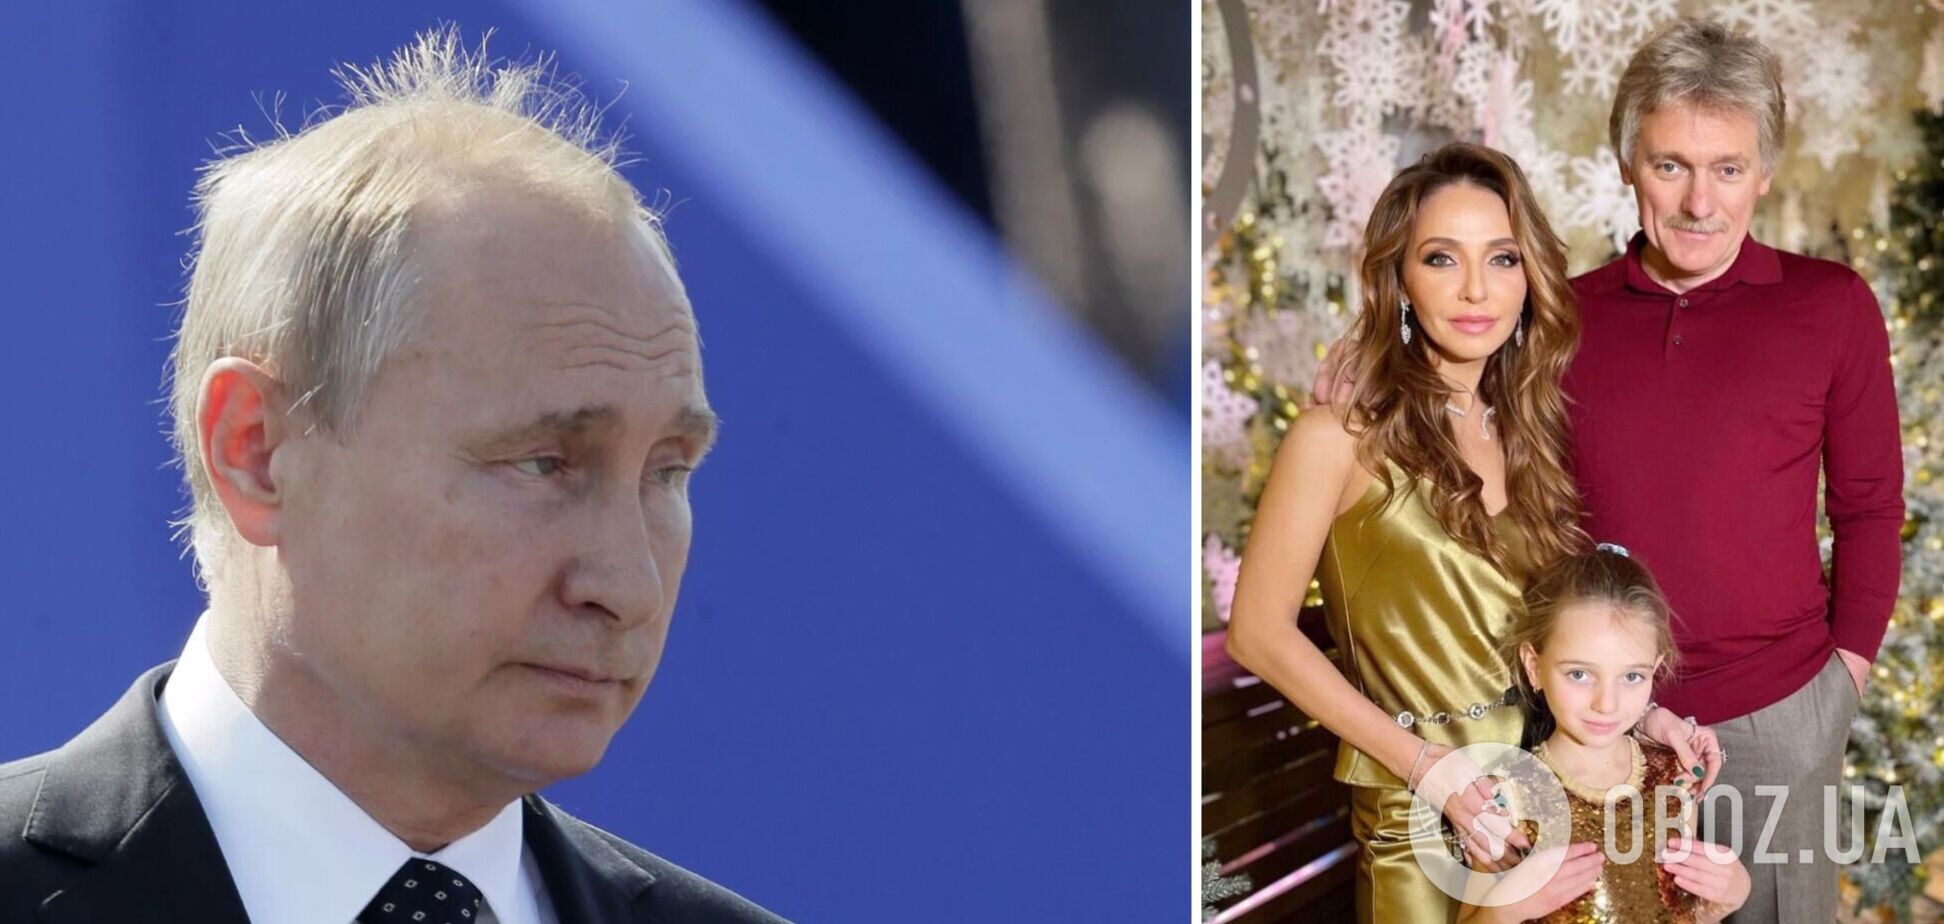 'Окупаційний прапор Росії'. Дружина Пєскова висловилася про Путіна і була висміяна в мережі